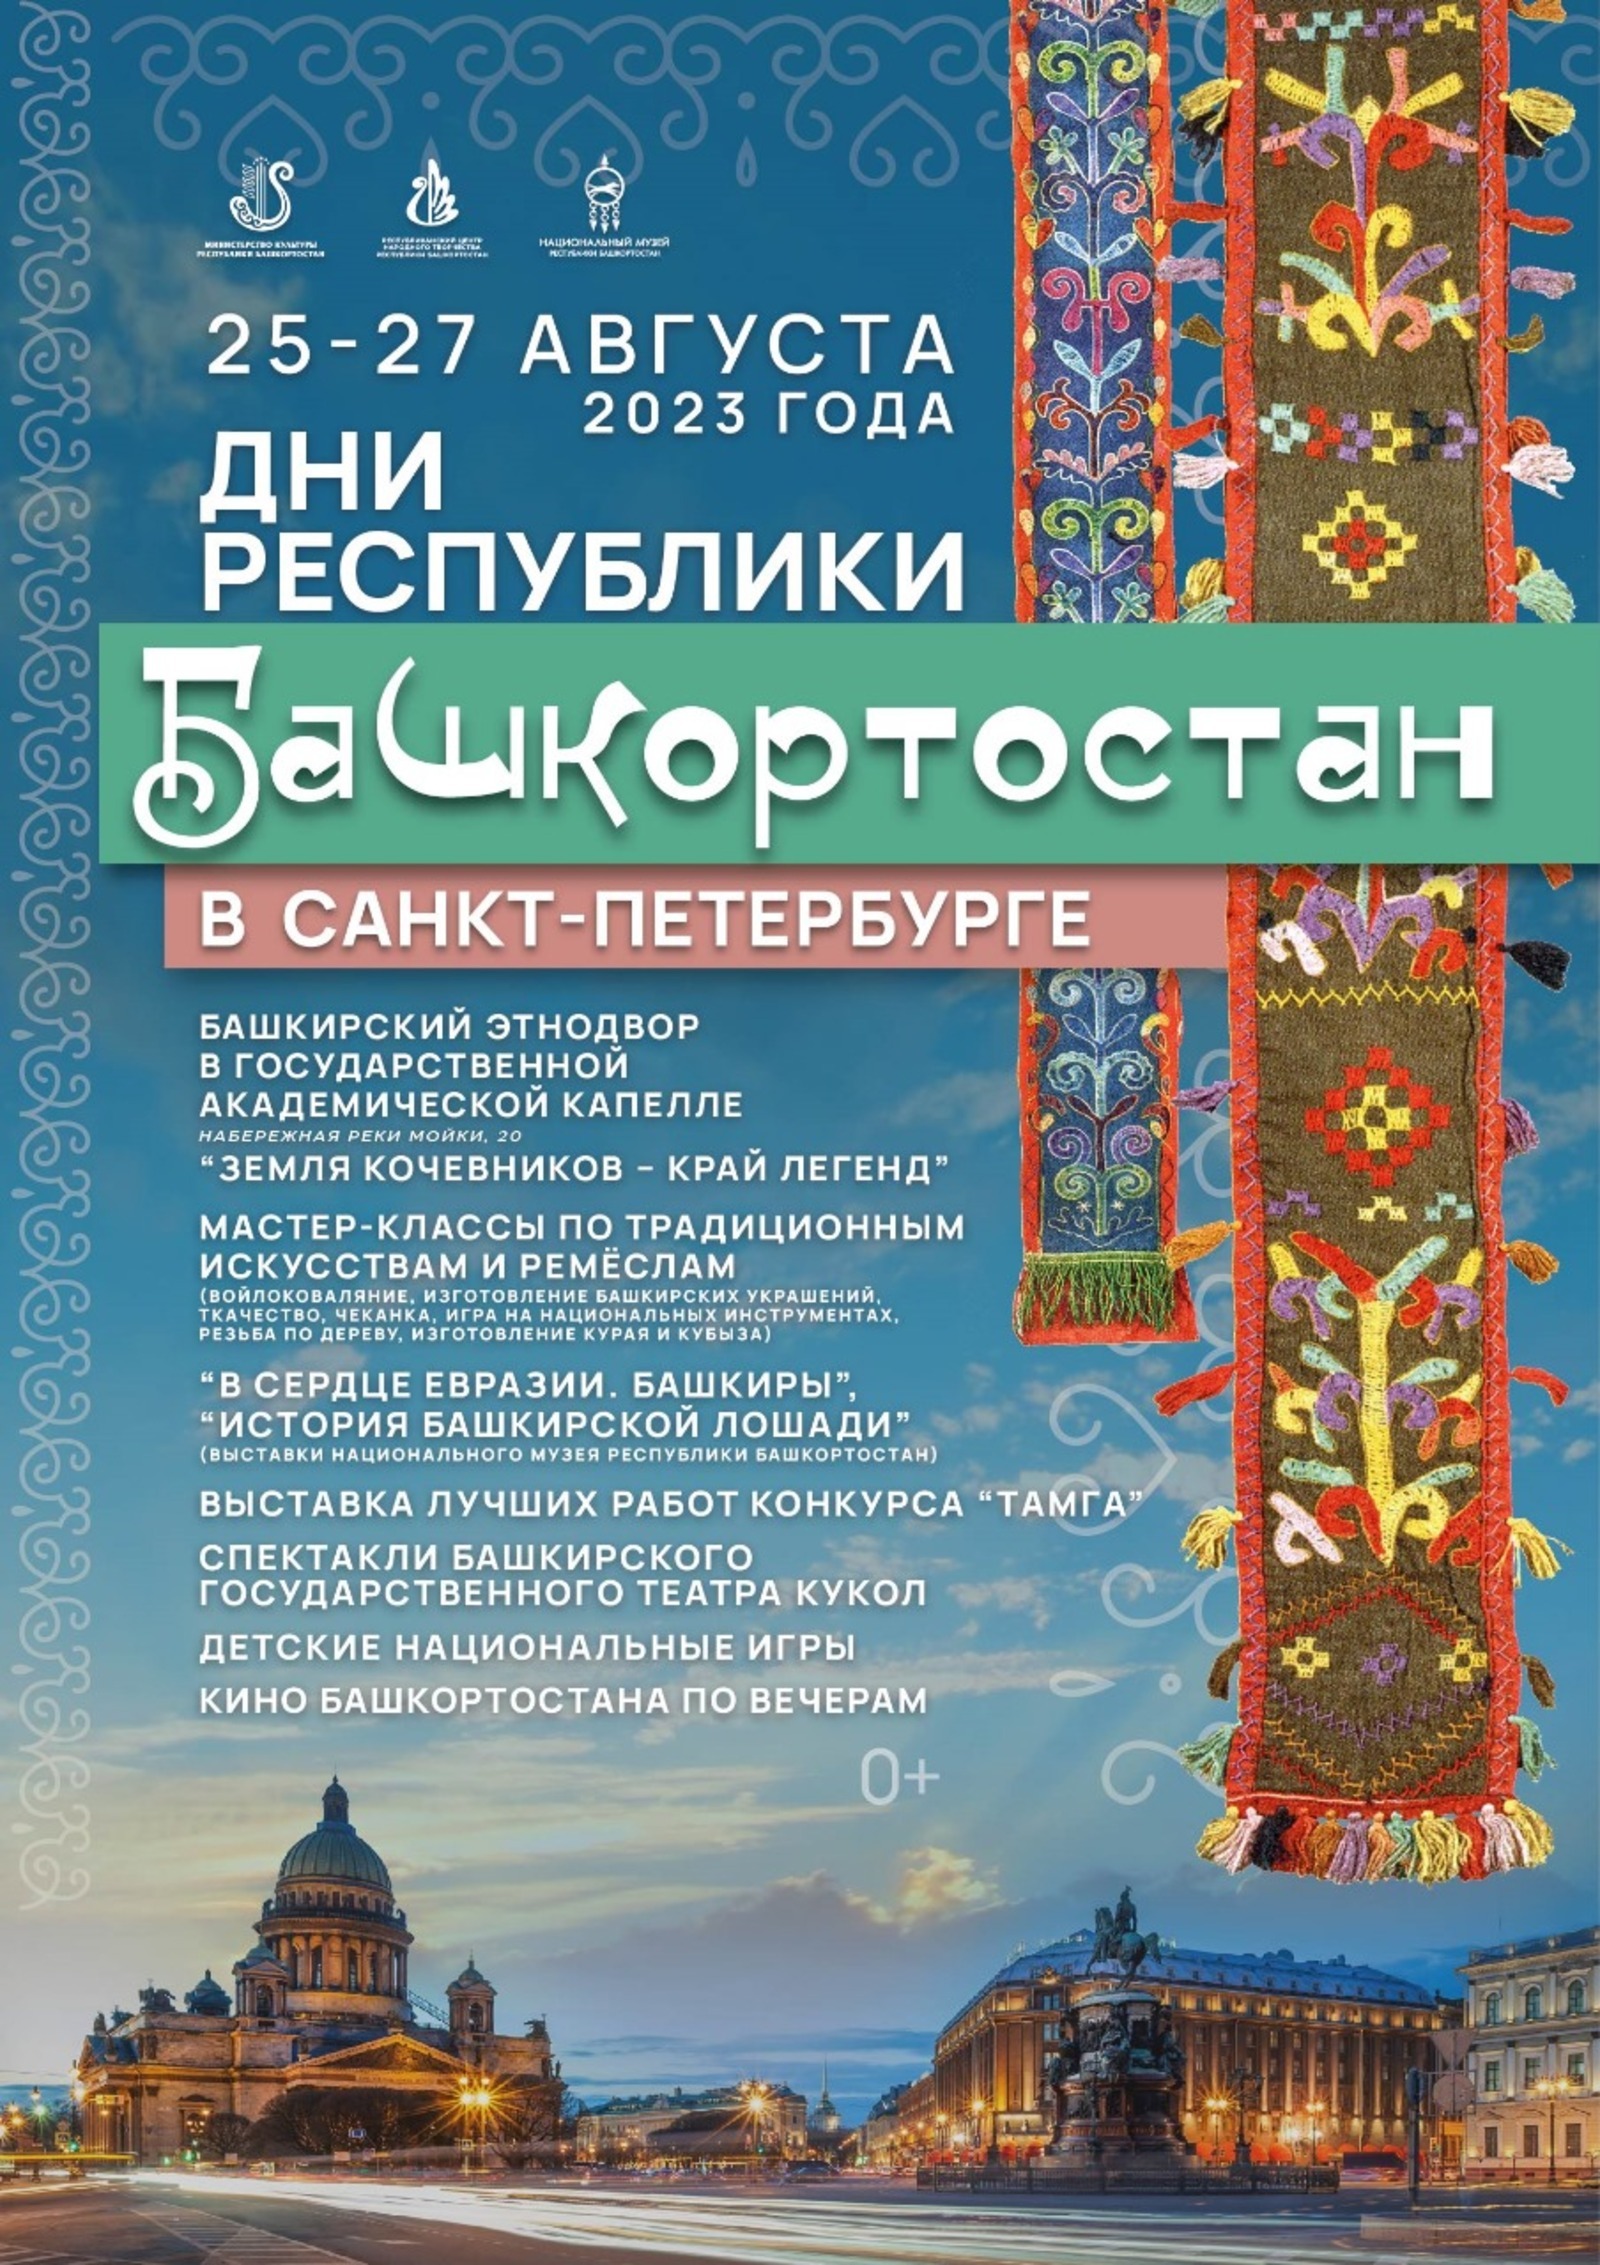 В Санкт-Петербурге в Дни Республики развернется башкирский этнодвор